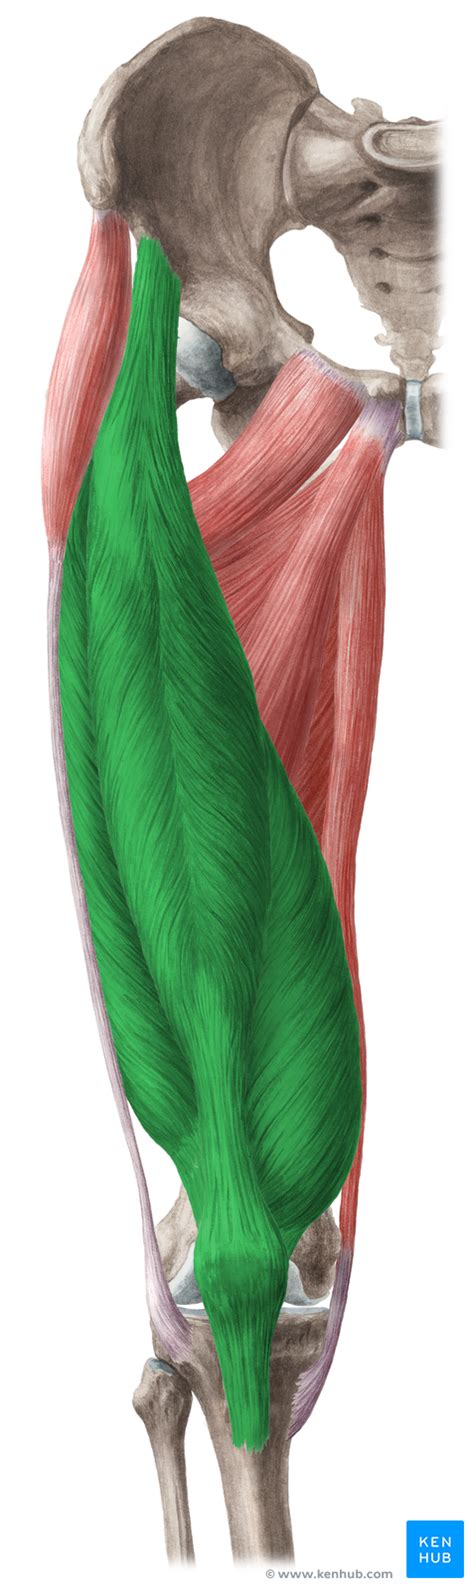 Quadriceps Femoris Muscle Quadriceps Femoris Muscle Anatomy Body Anatomy